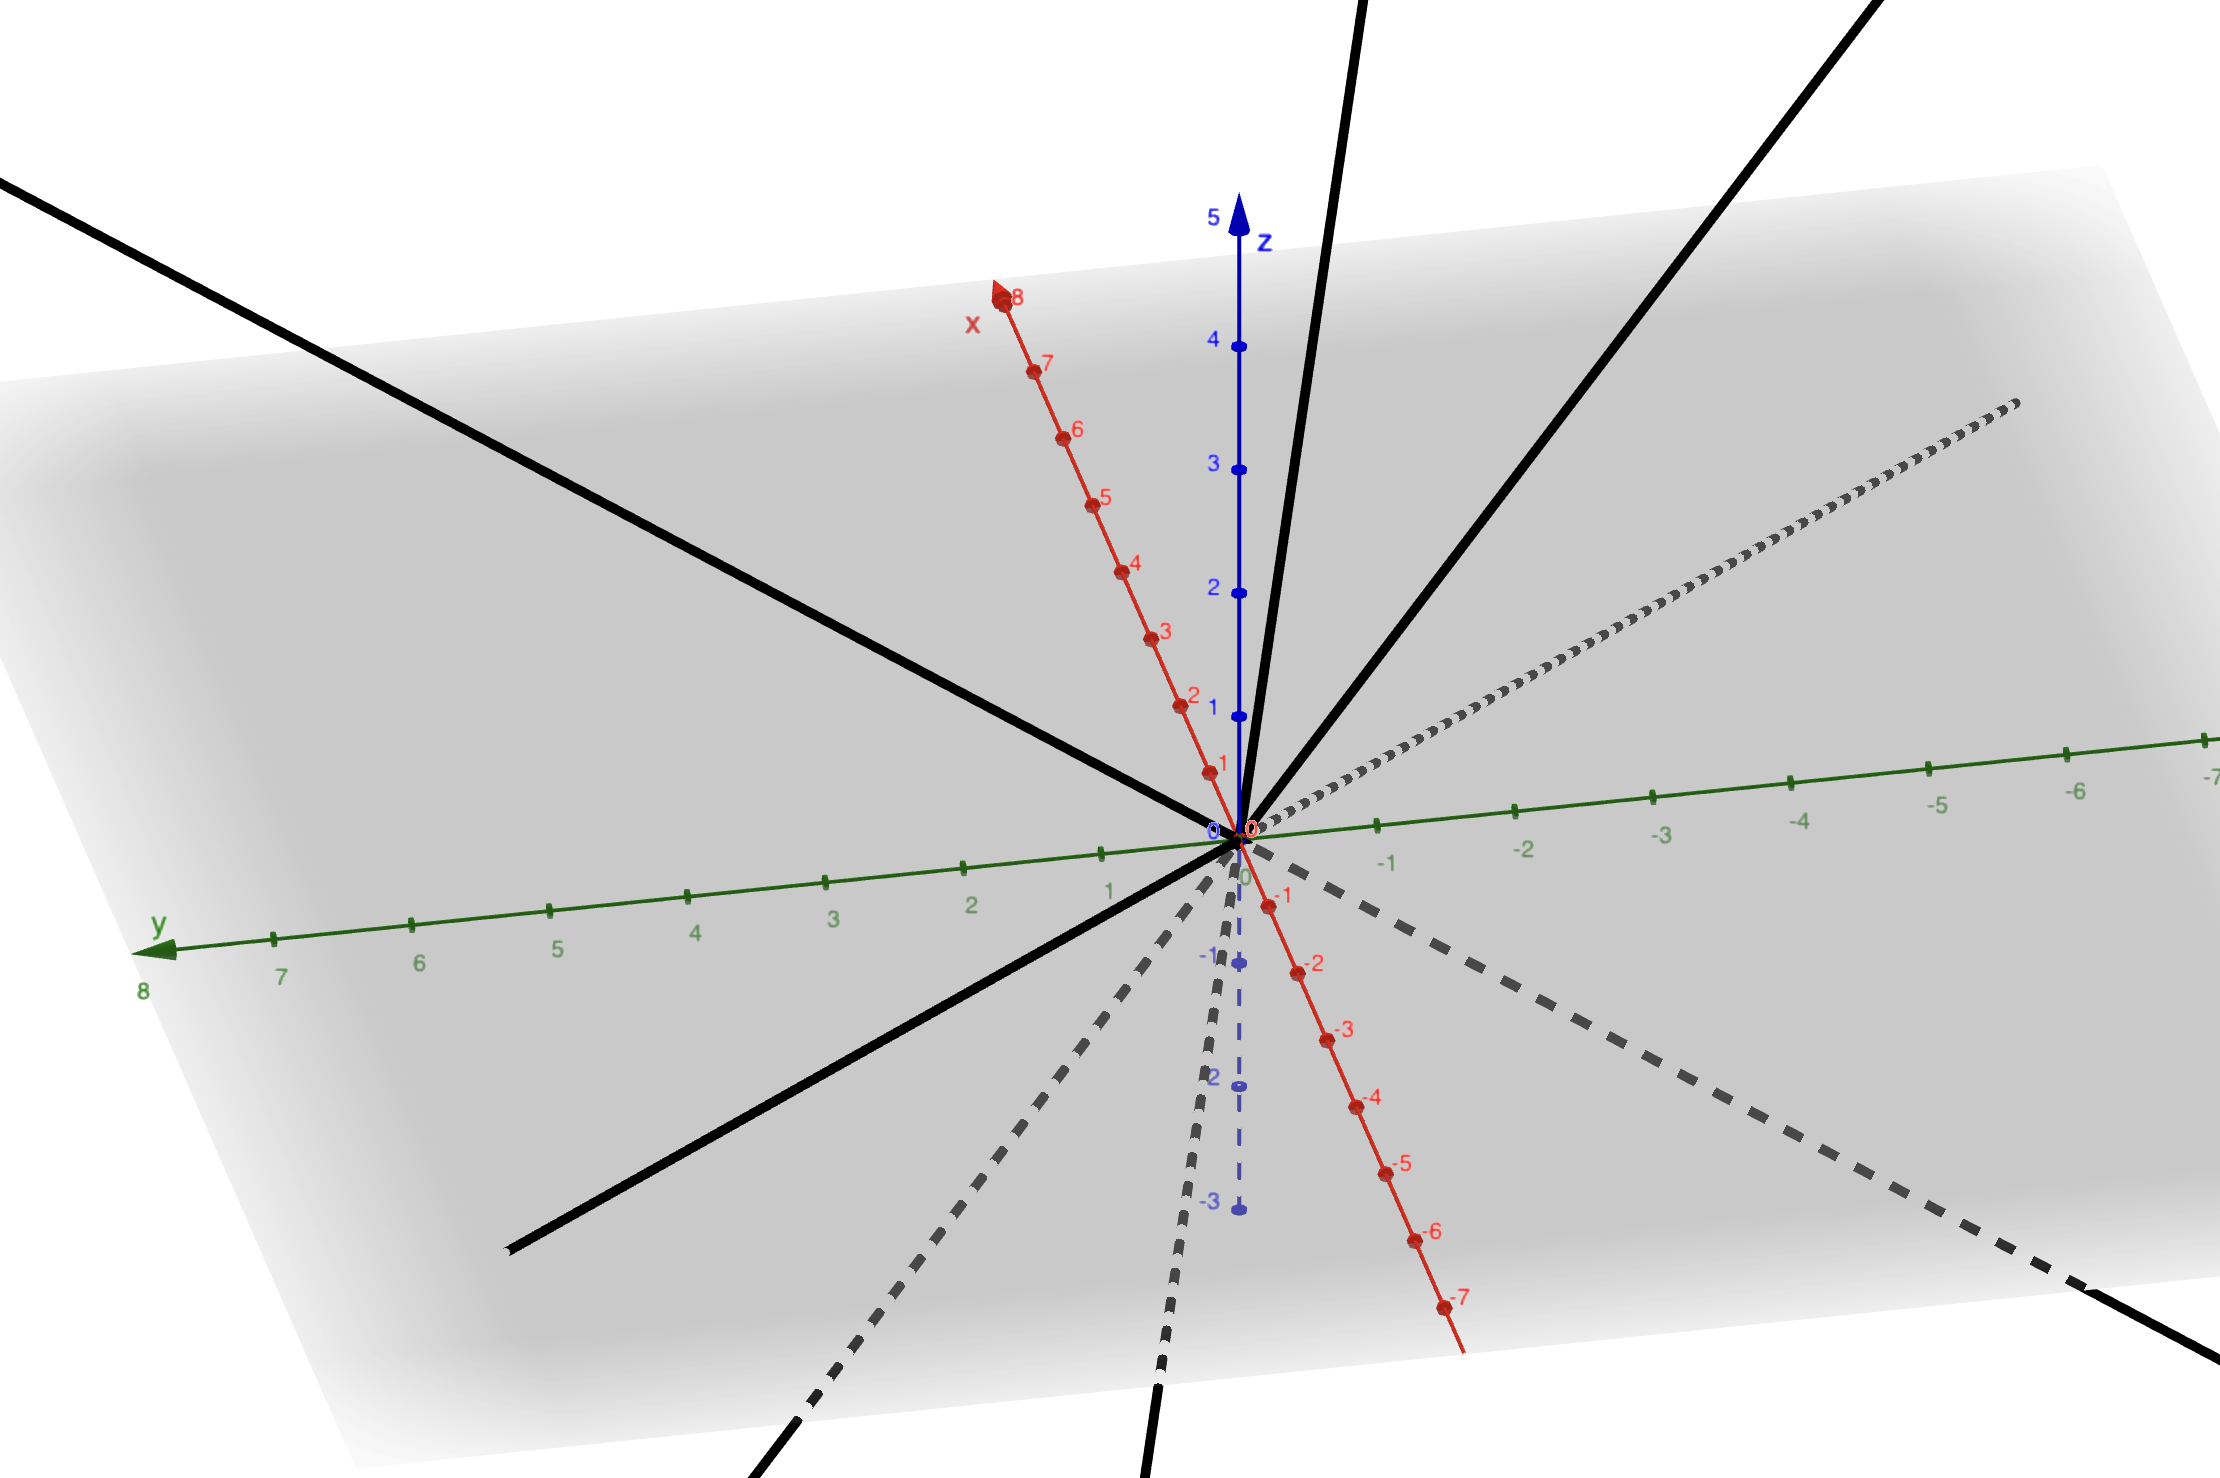 Les 4 droites noires non alignées 3 à 3 forment un repère projectif.